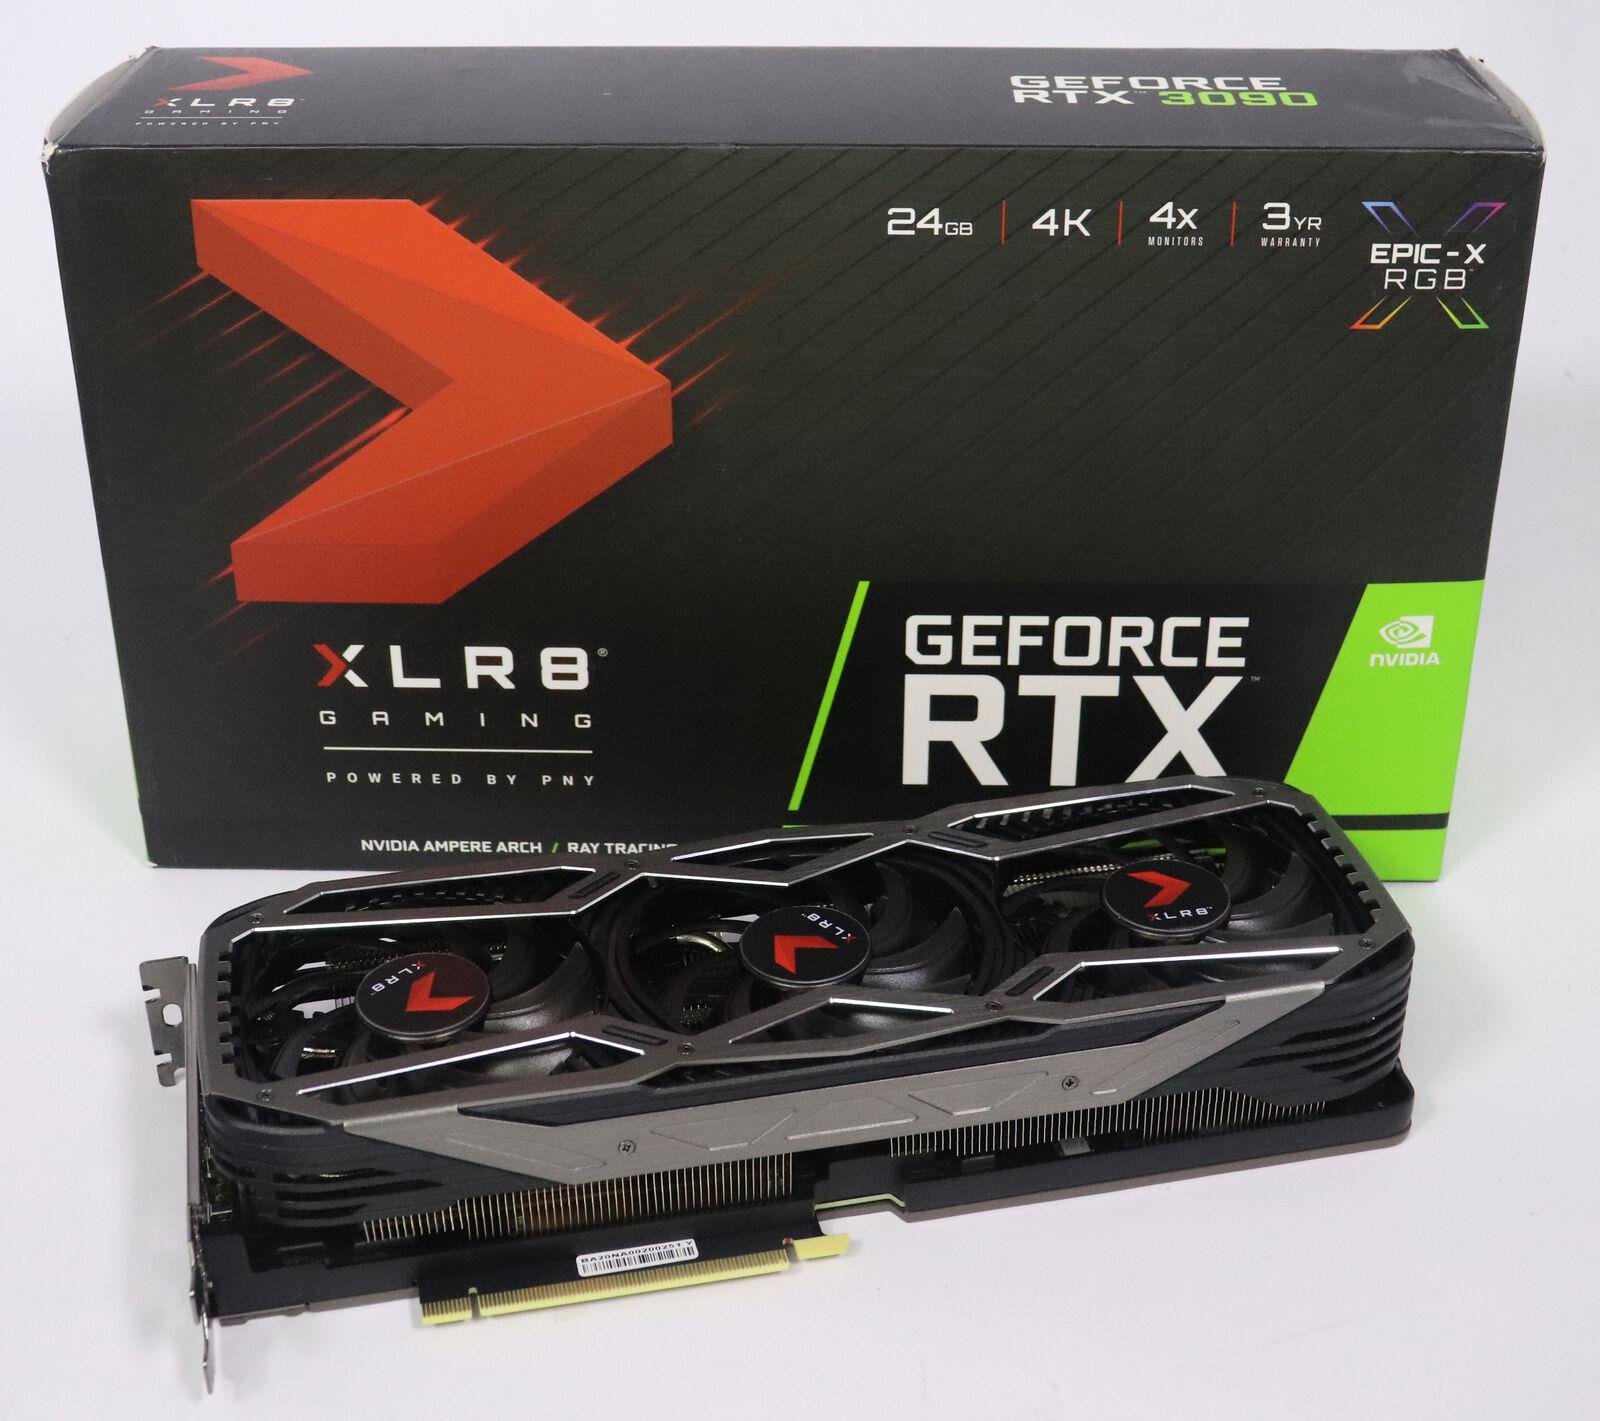 PNY GeForce RTX 3090 XLR8 Gaming EPIC-X RGB 24GB GDDR6X